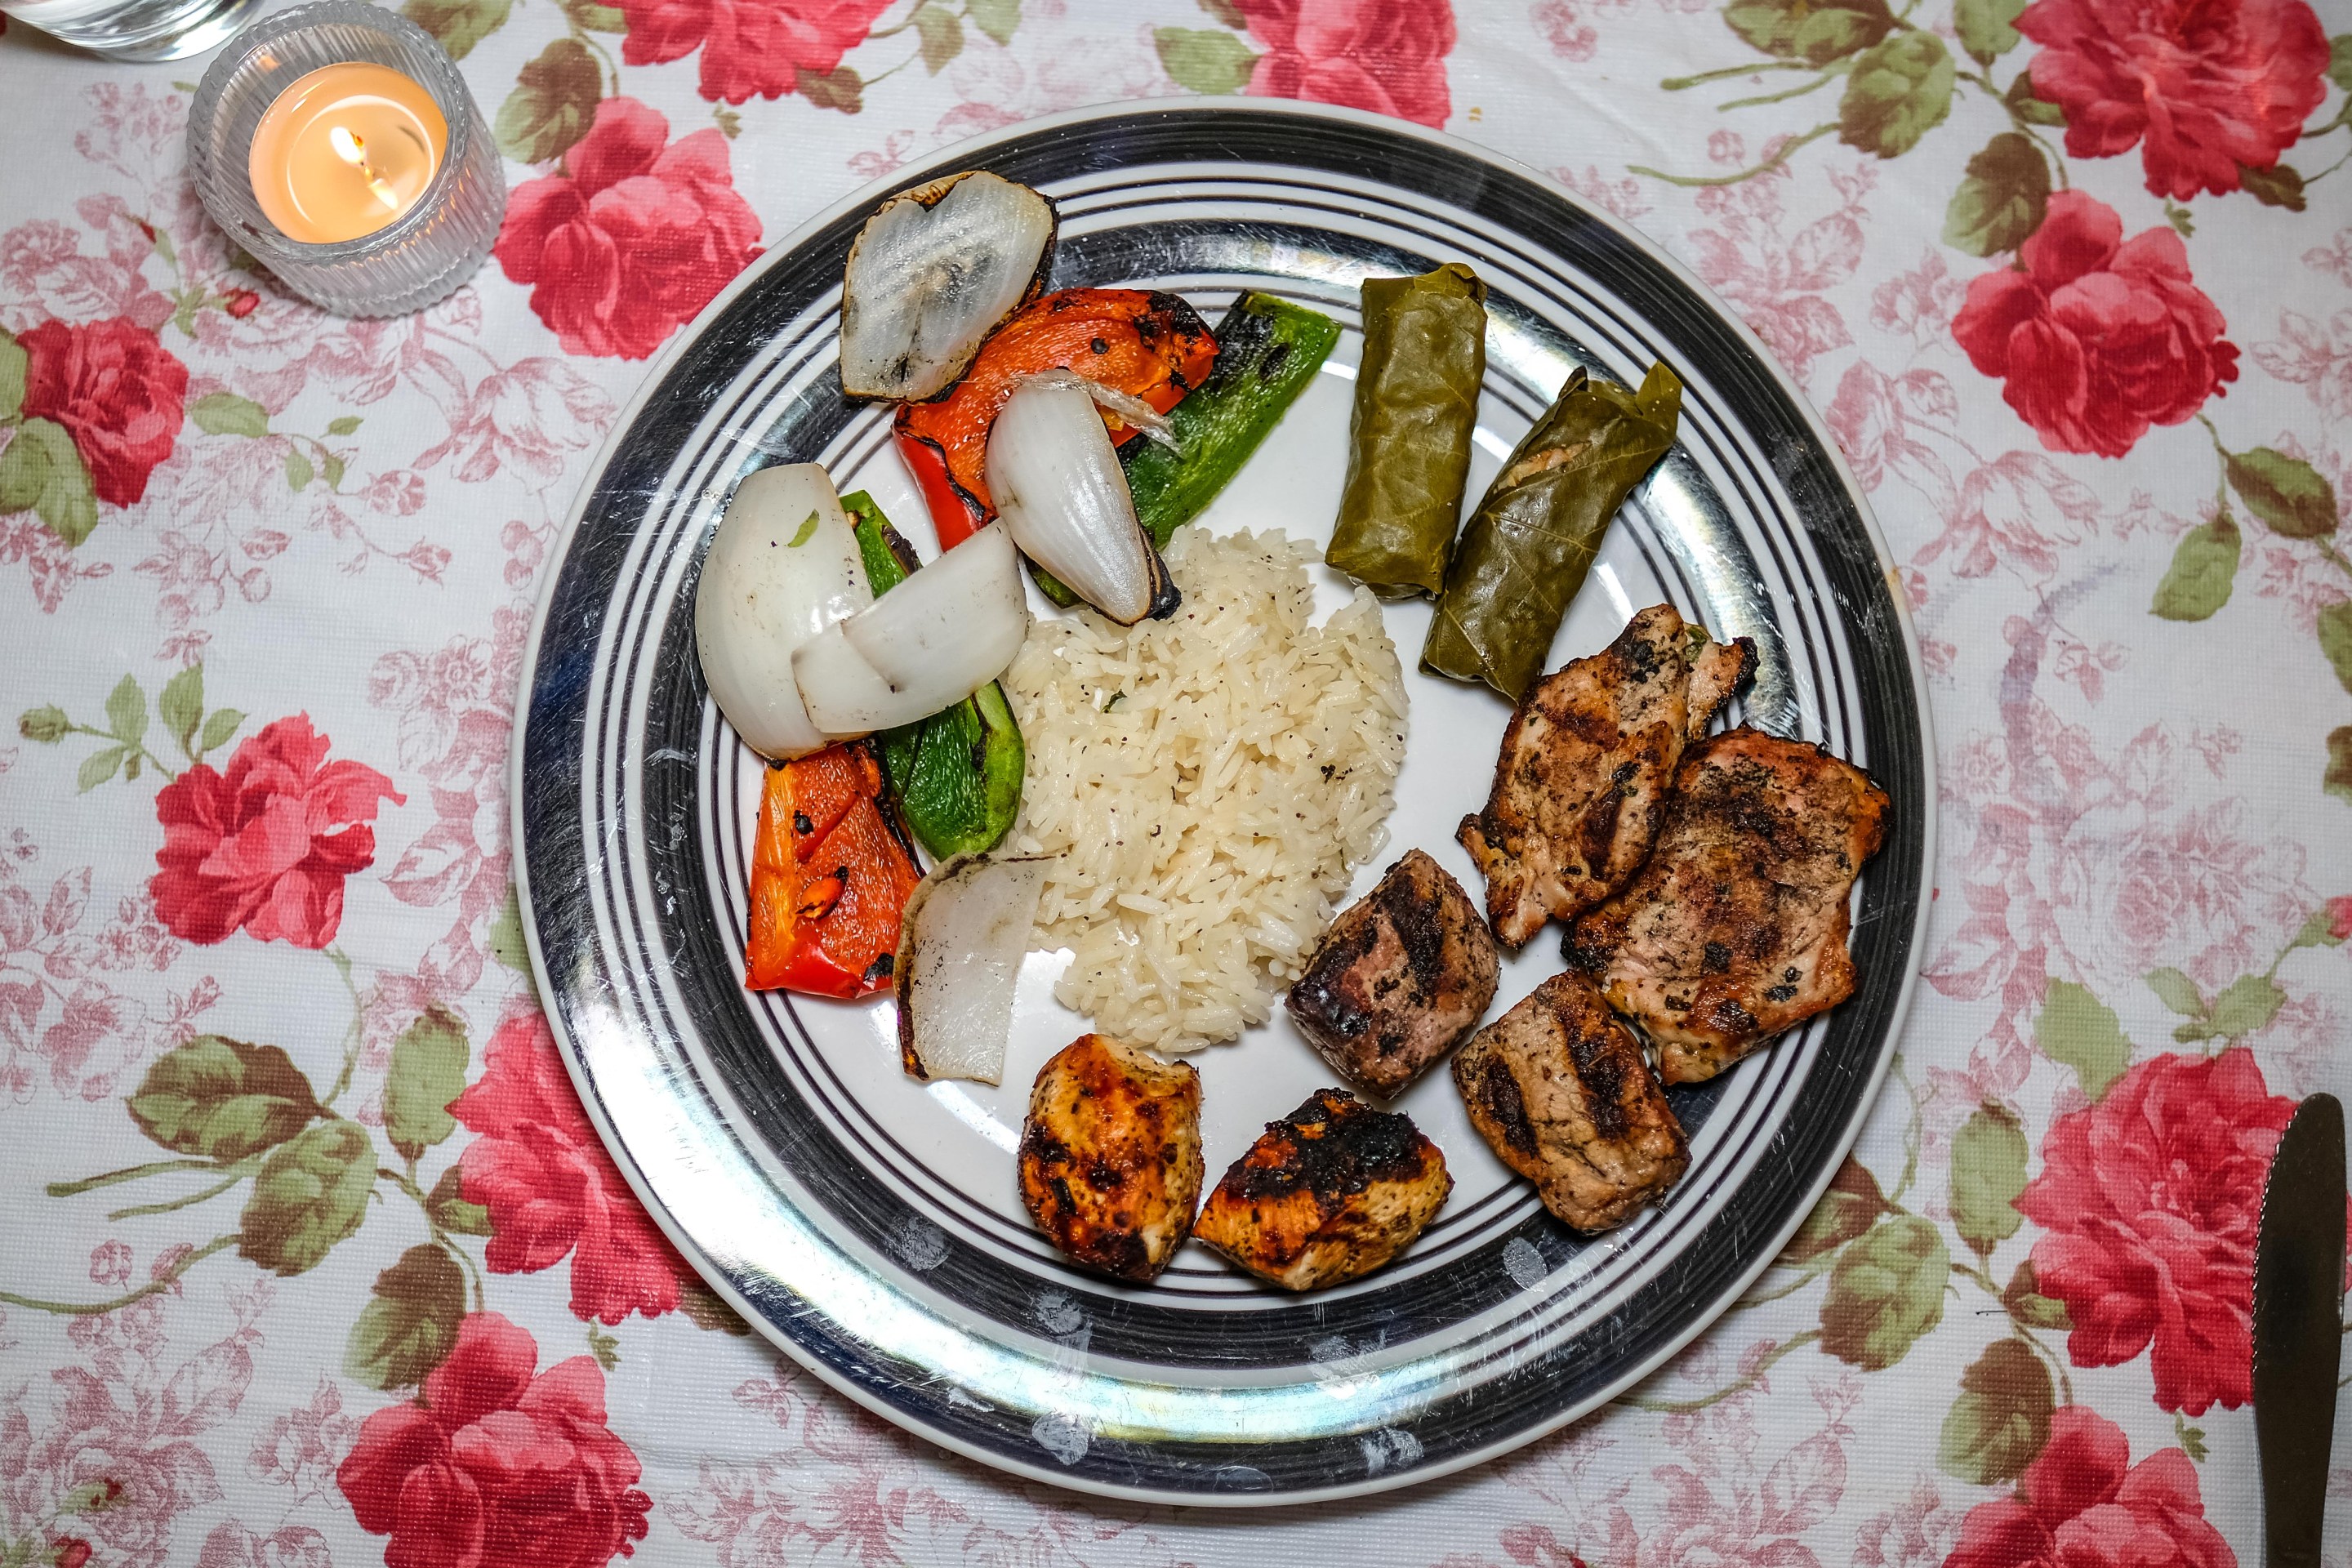 Armenian plate with roast meats and stuffed grape leaves.